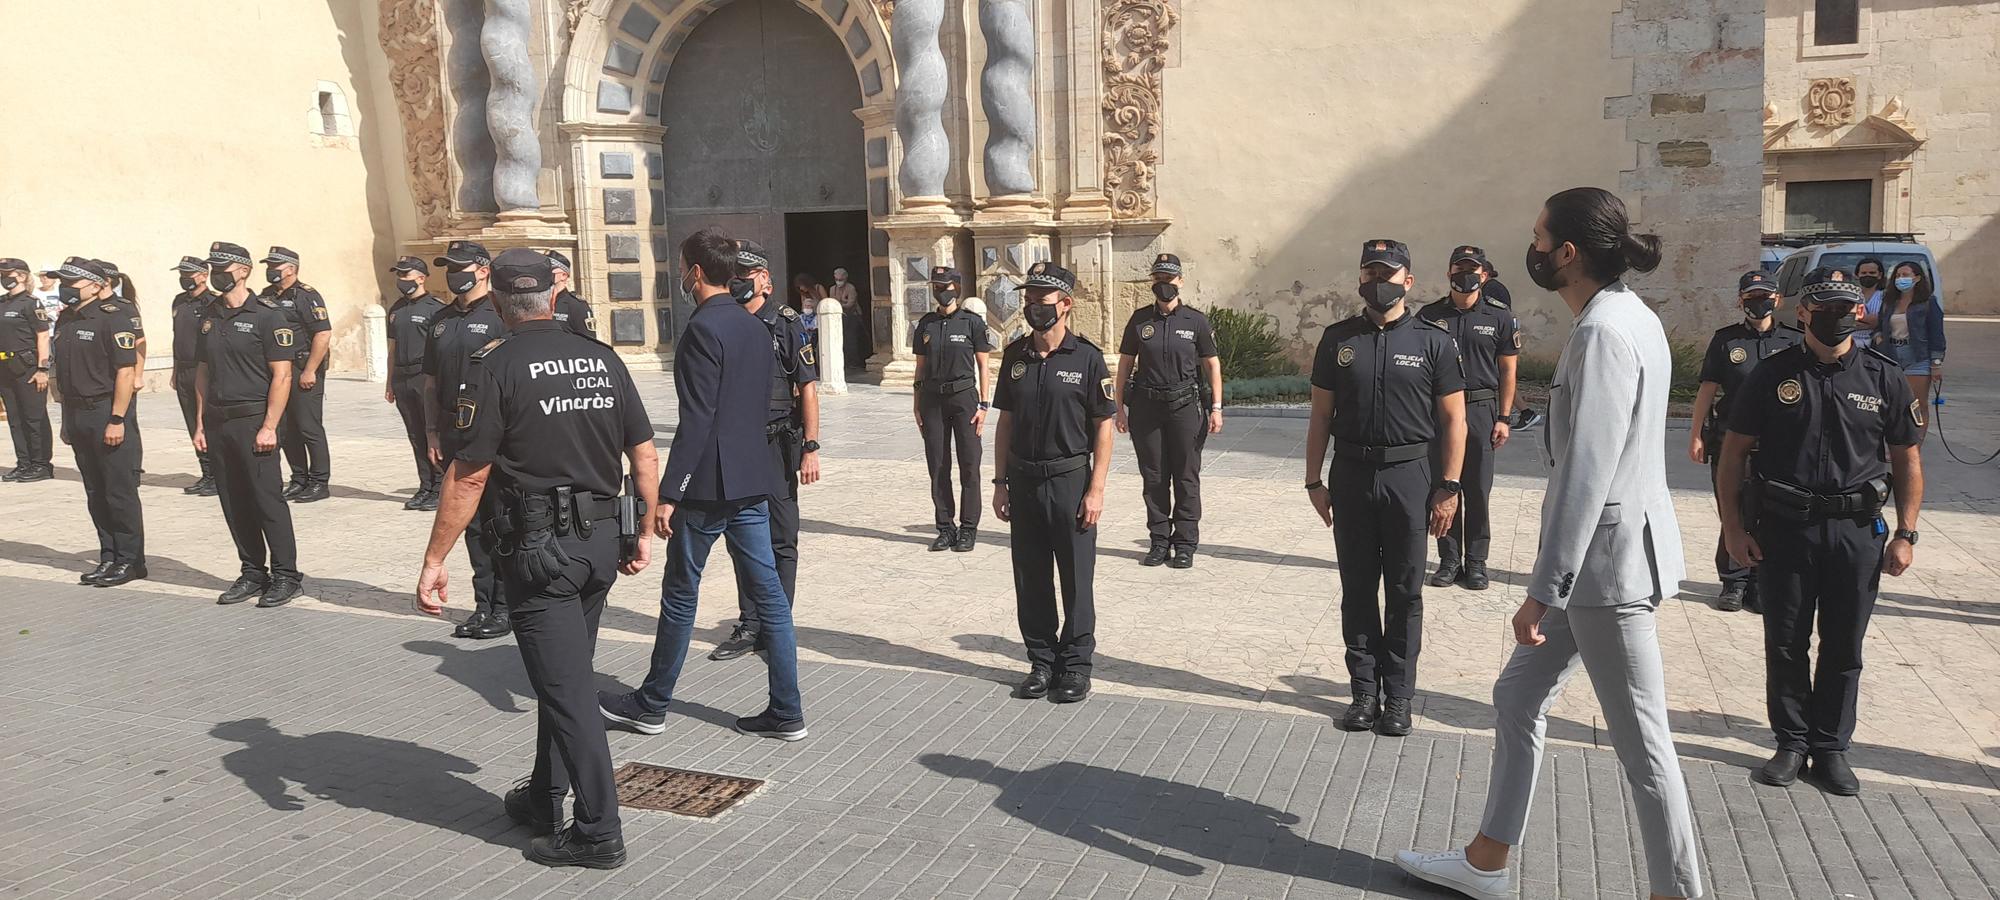 La Policía Local celebra San Miguel